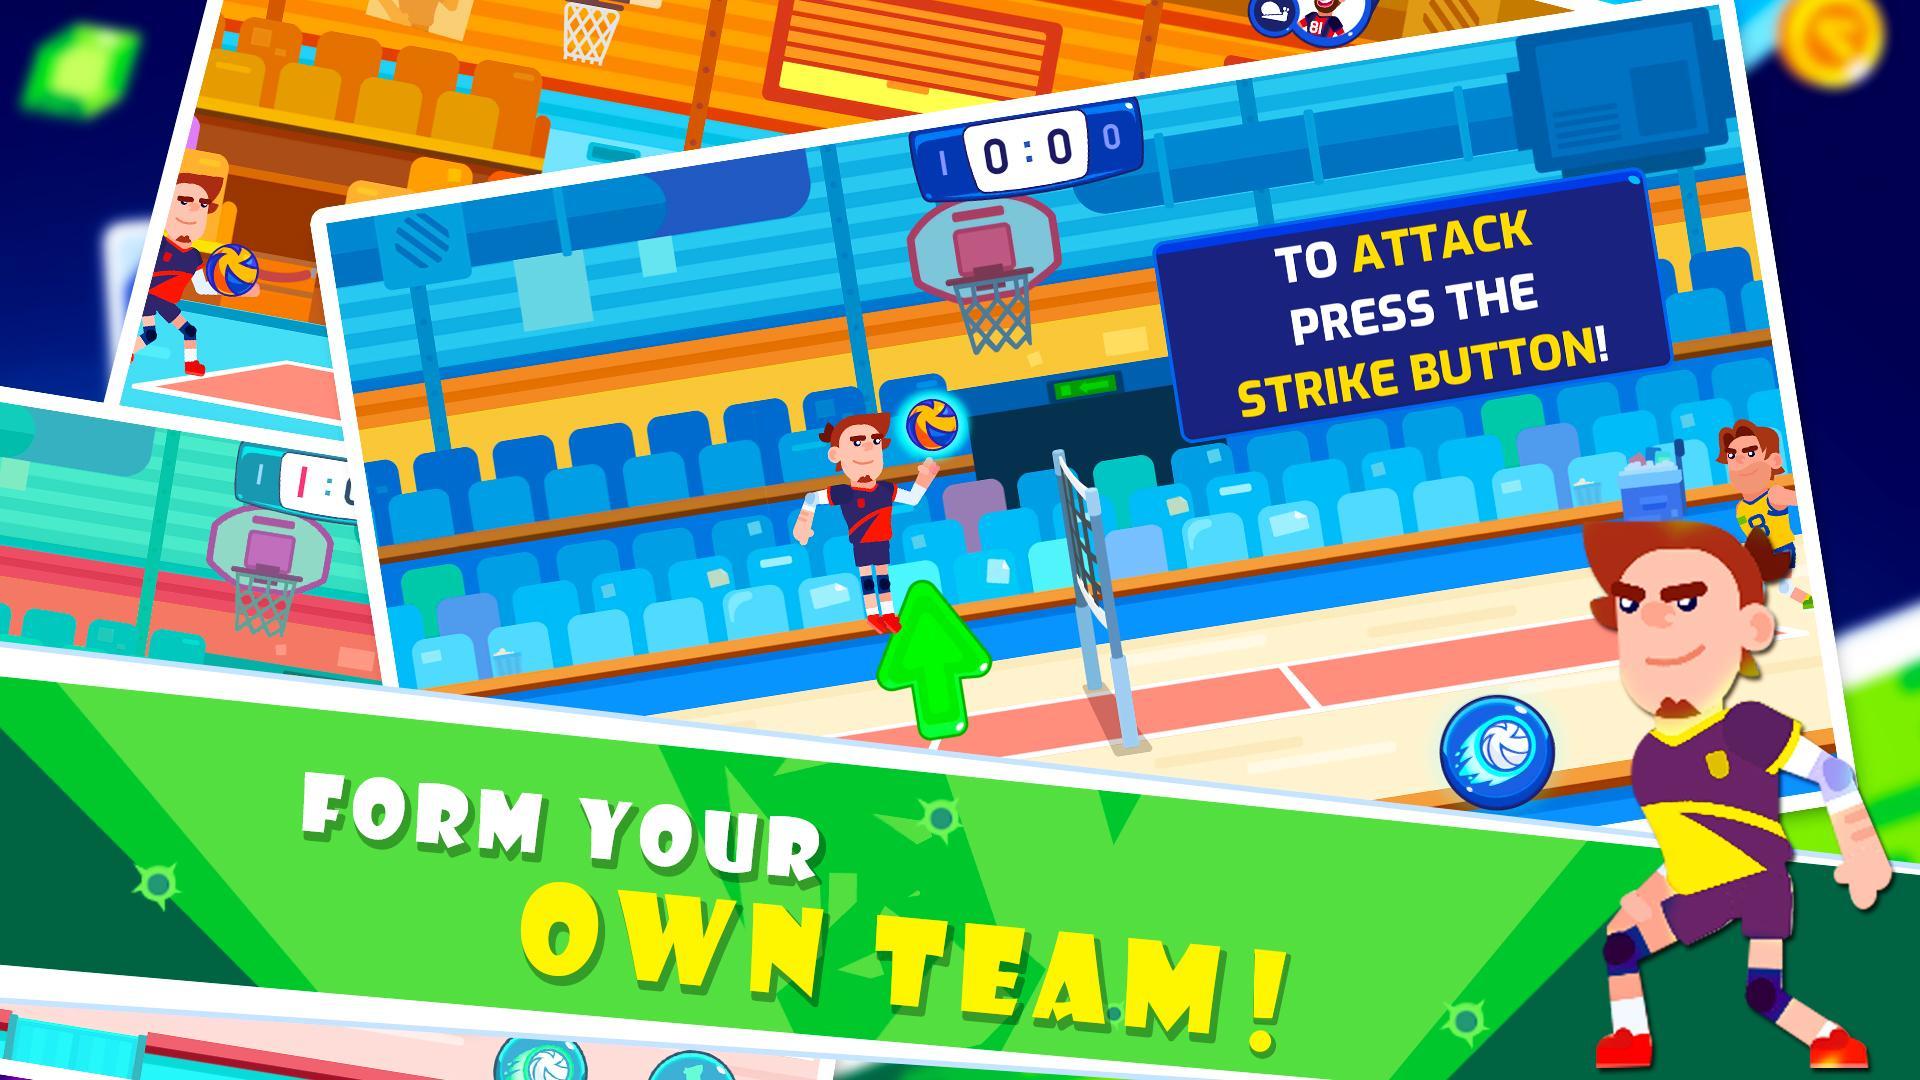 Screenshot 1 of 배구 스포츠 게임 